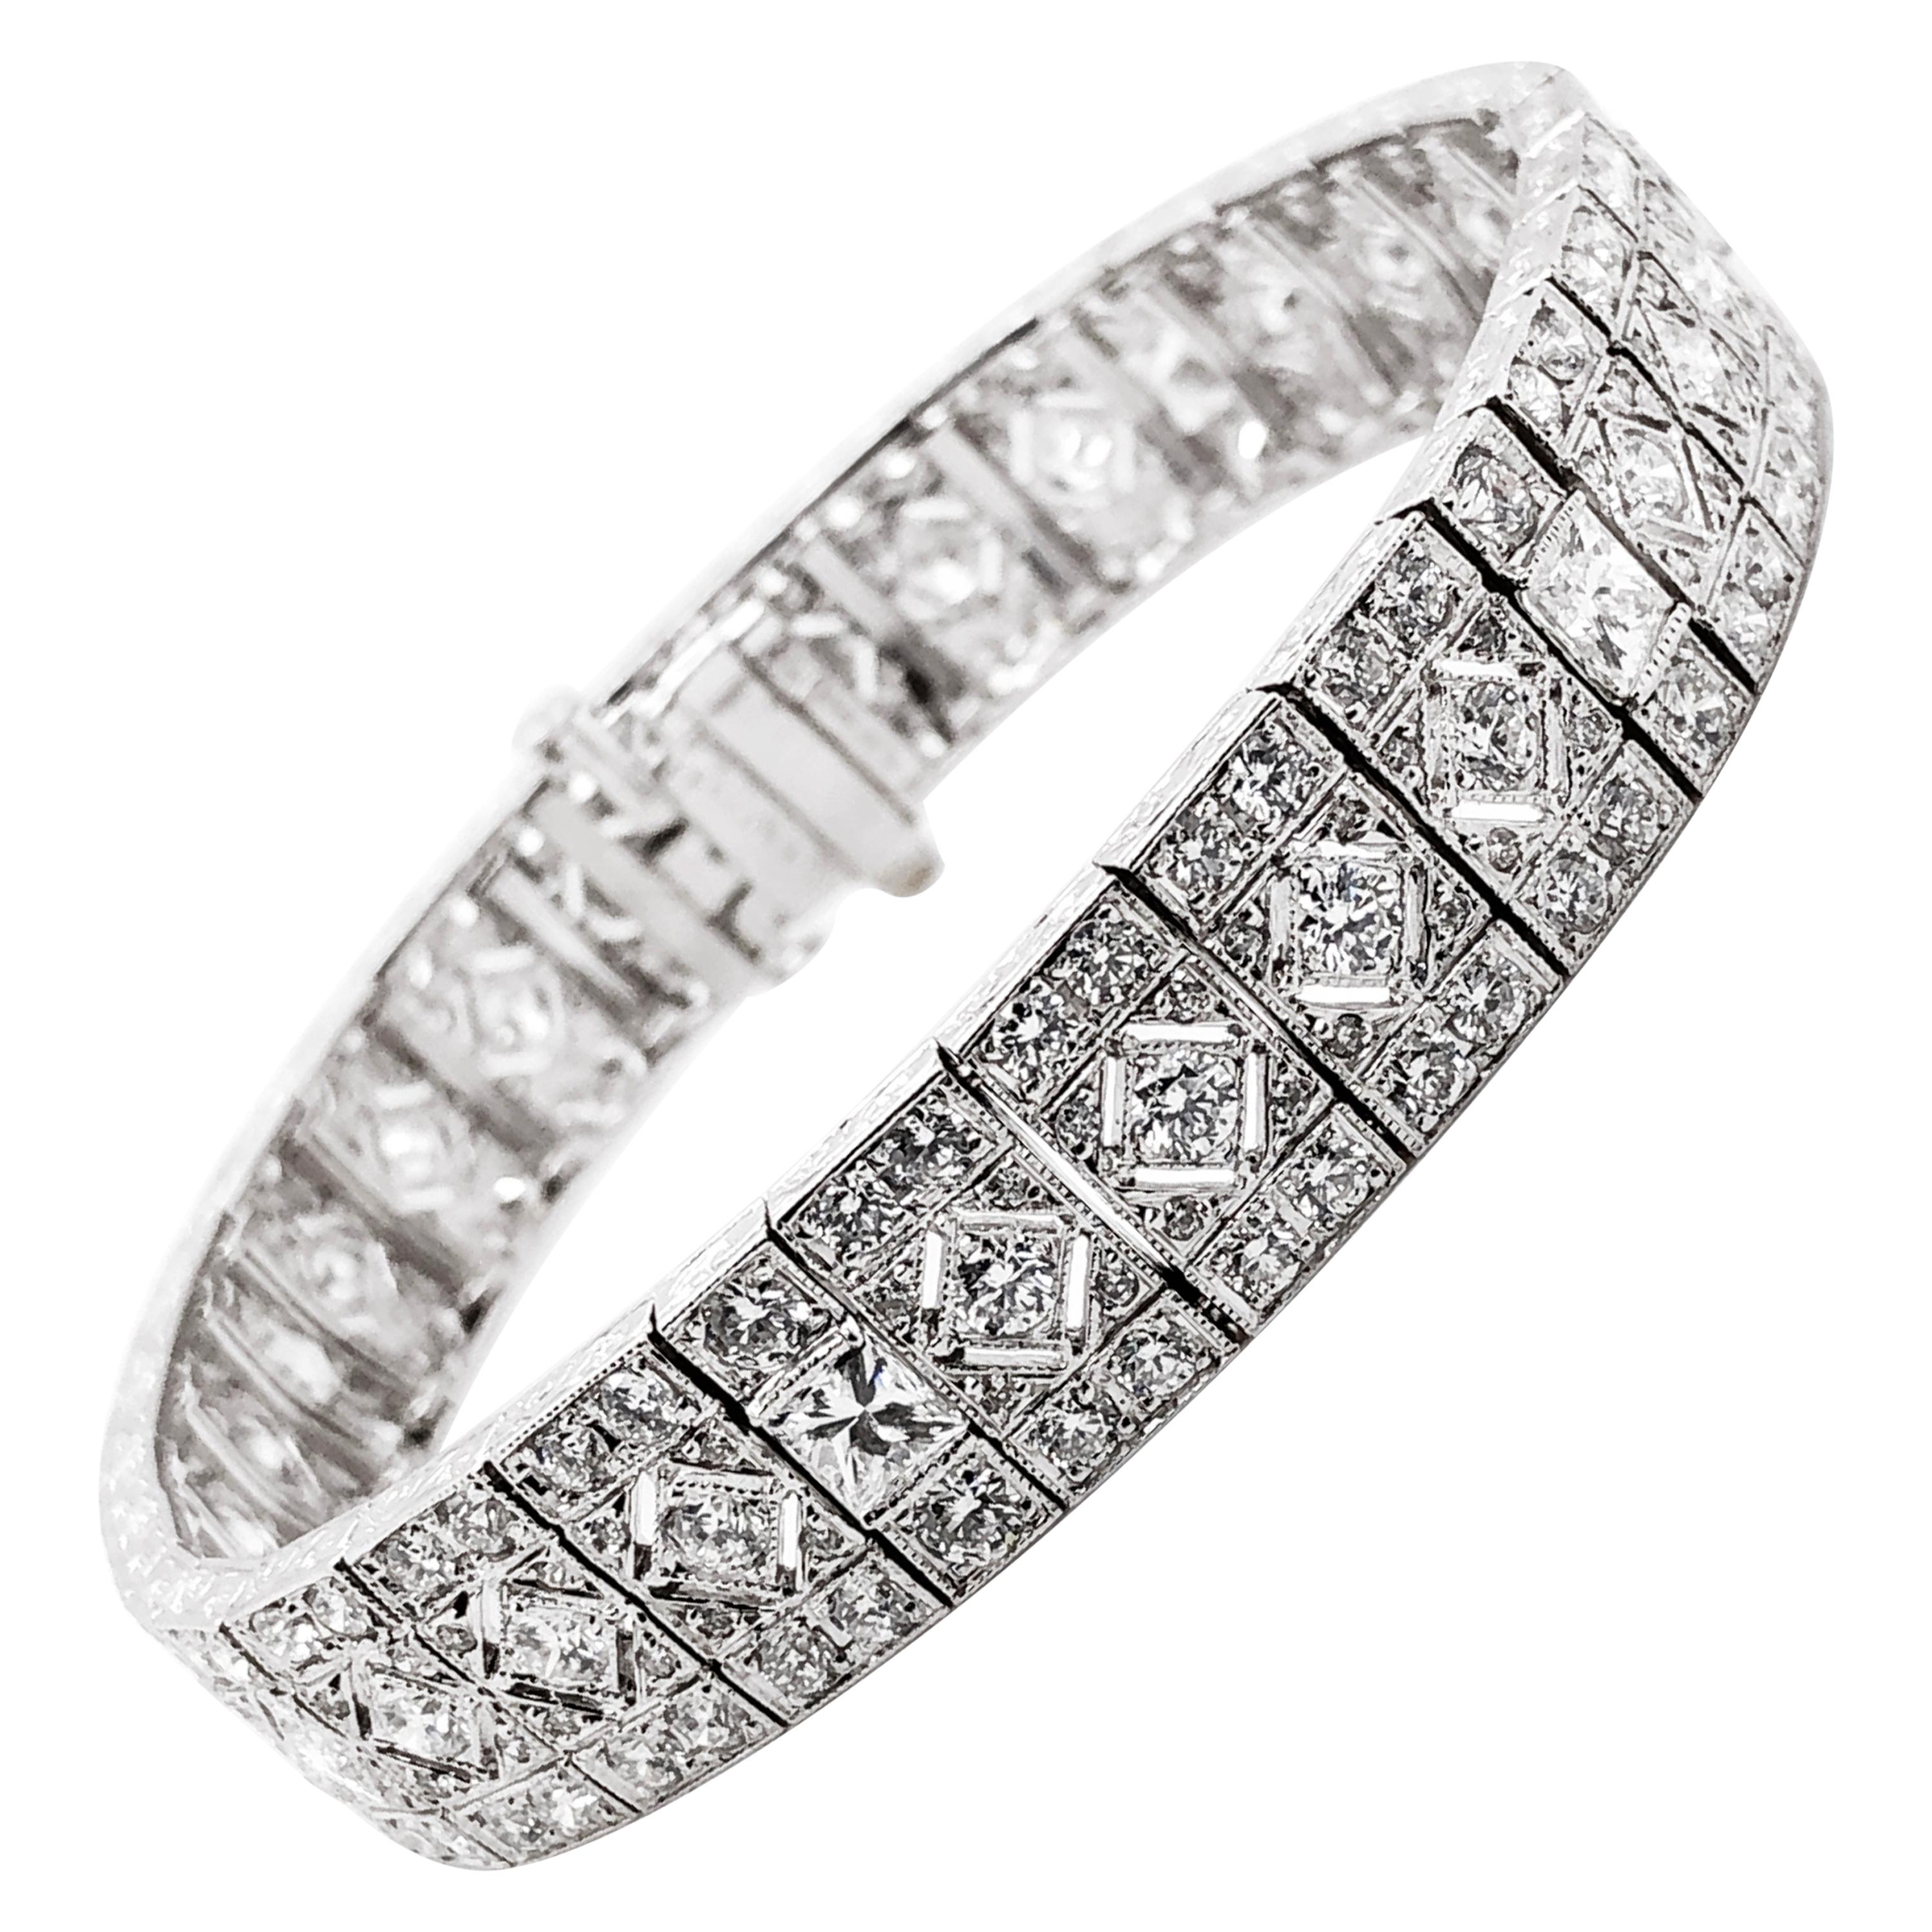 Retro Inspired Round Natural Diamonds 10.63 Carat Platinum Bracelet For Sale